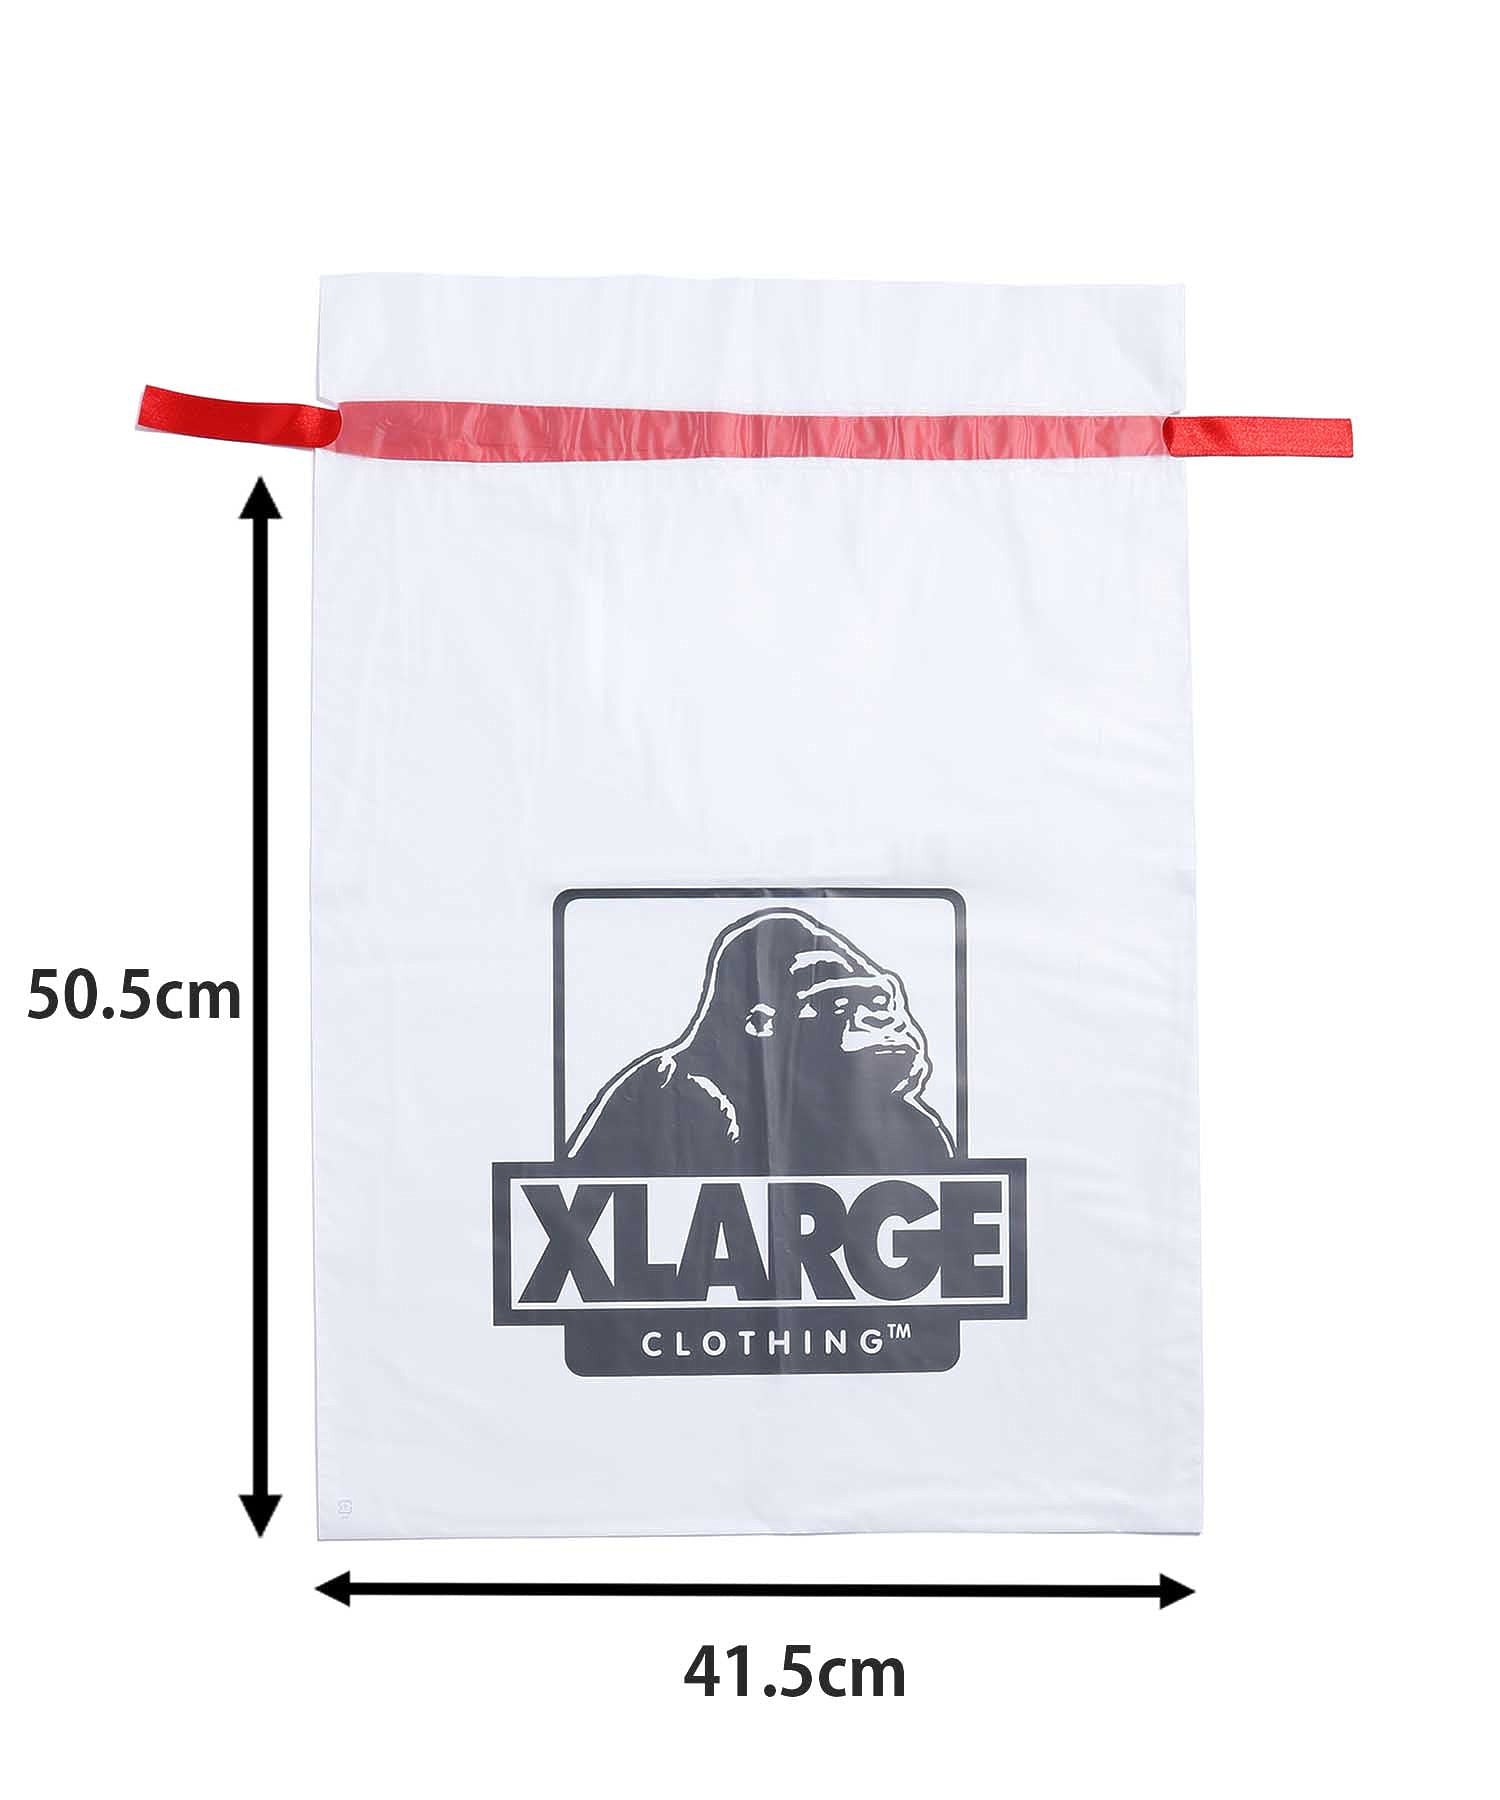 XL GIFT BAG SET CALIF(M)  XLARGE